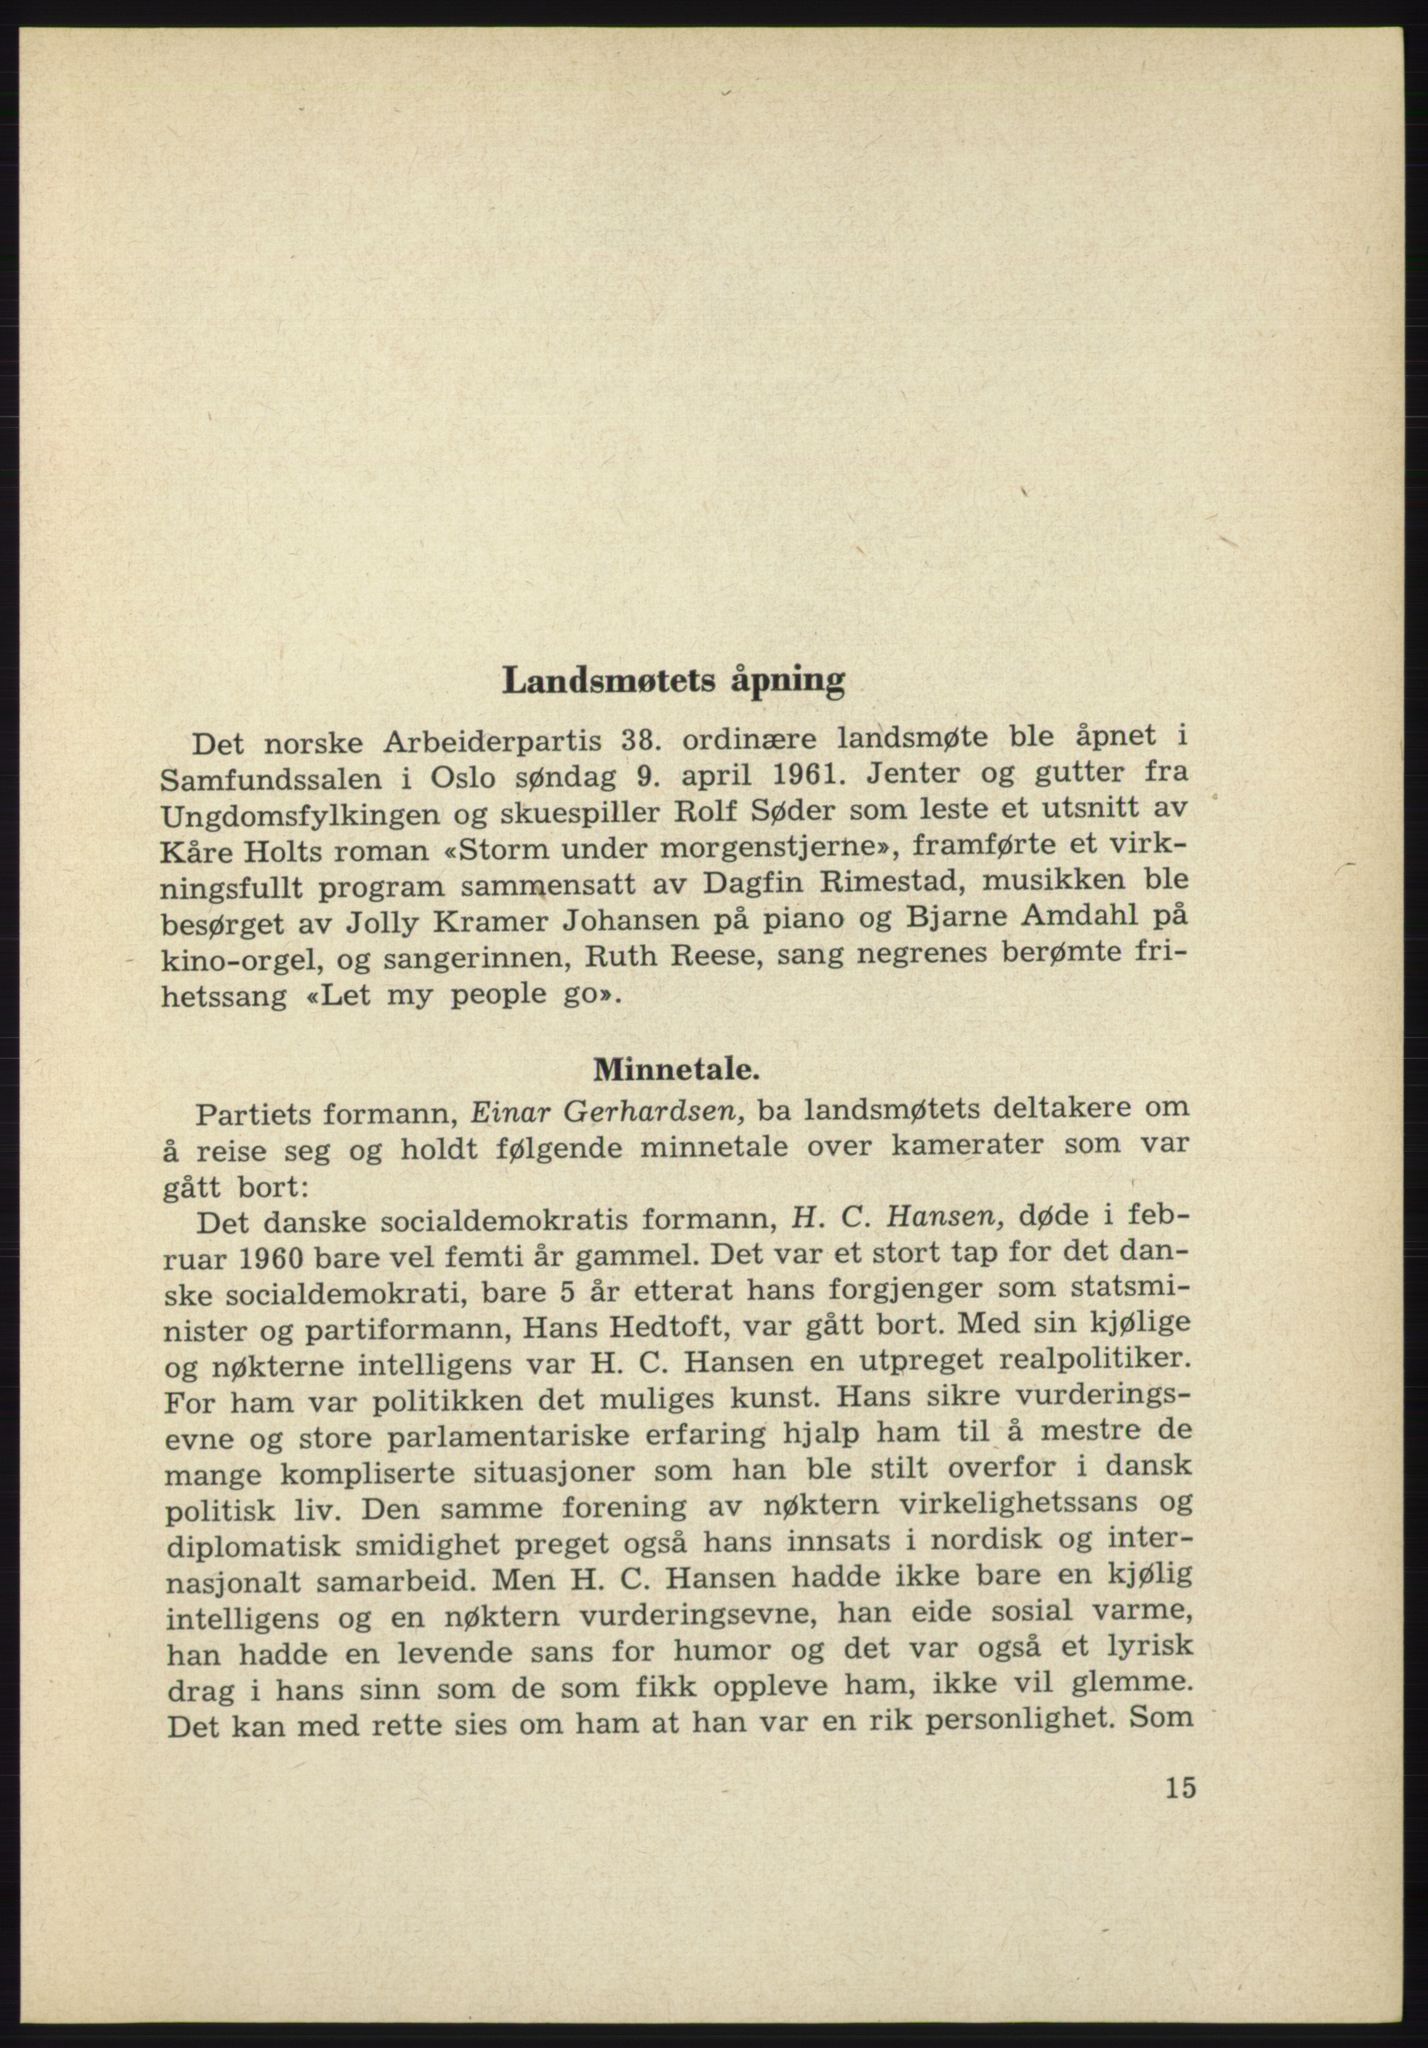 Det norske Arbeiderparti - publikasjoner, AAB/-/-/-: Protokoll over forhandlingene på det 38. ordinære landsmøte 9.-11. april 1961 i Oslo, 1961, p. 15